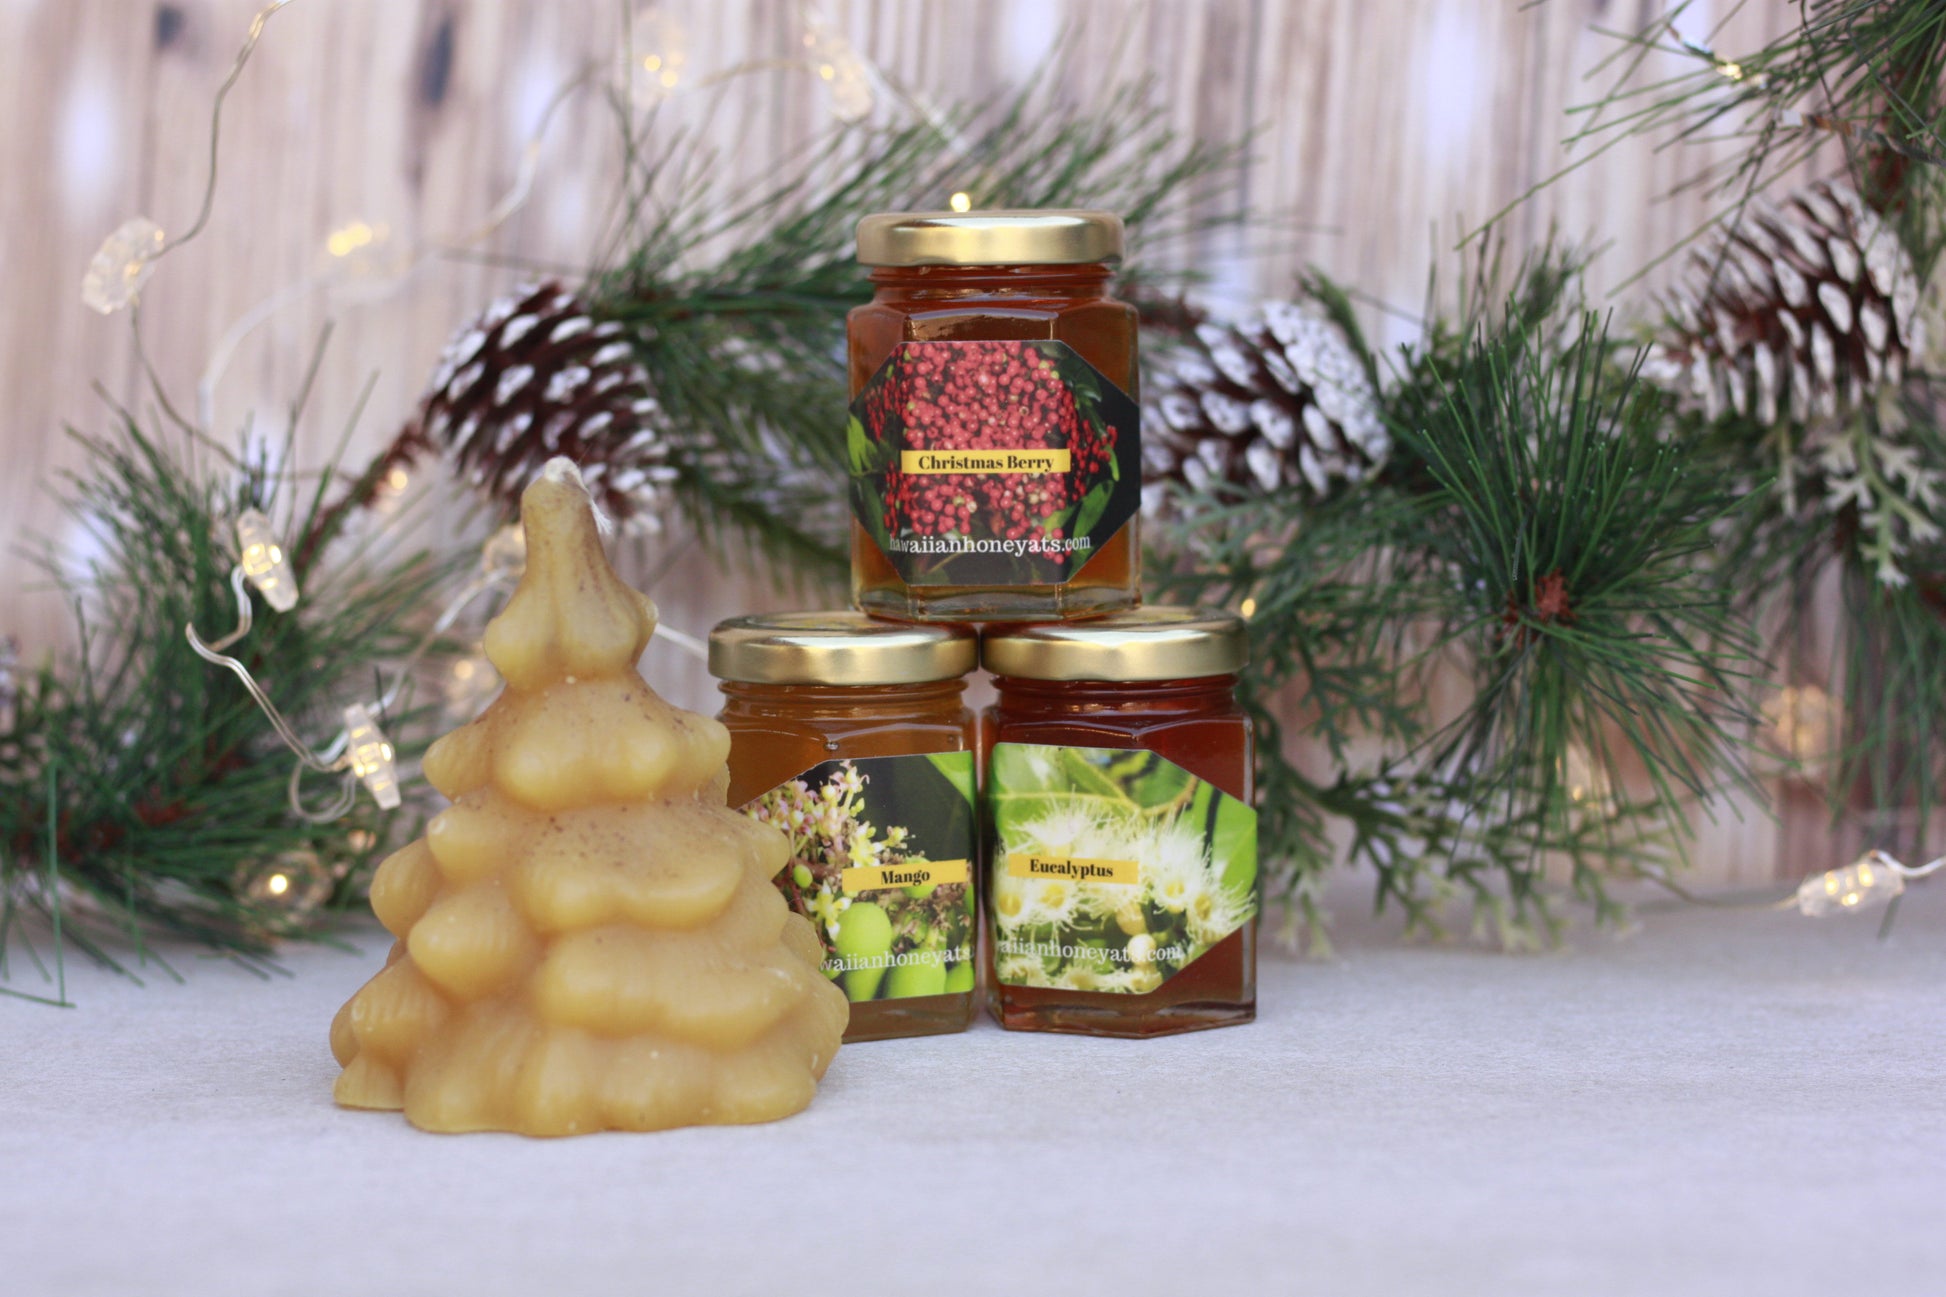 Natural Christmas Tree Candle - Hawaiian Honey AT&S